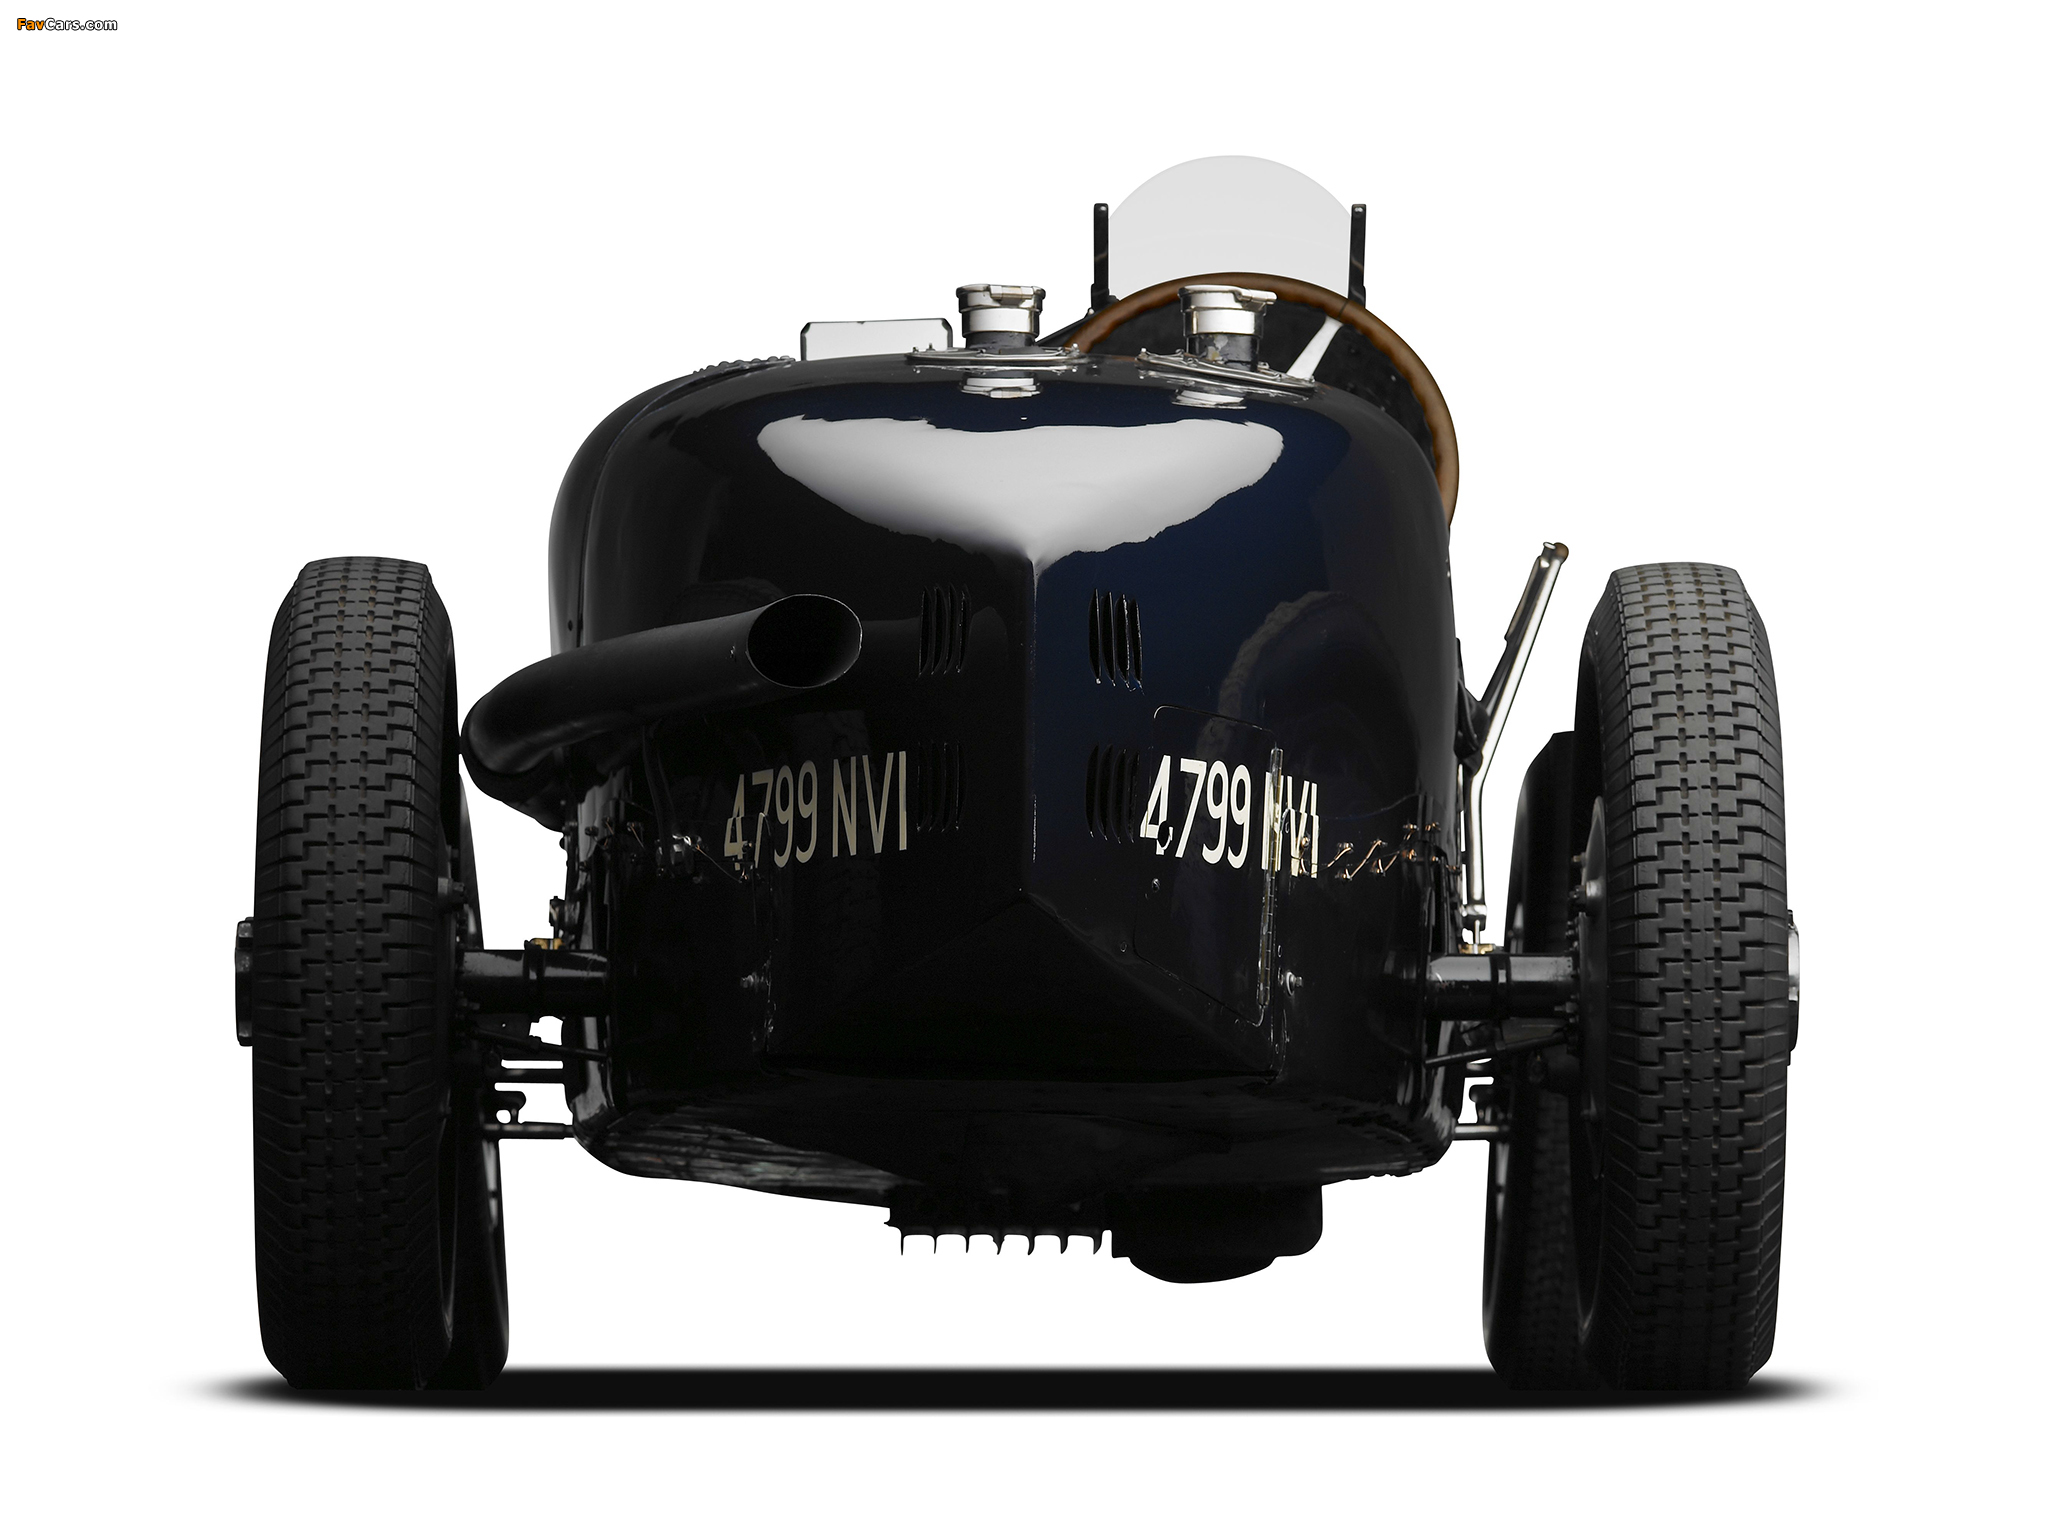 Bugatti Type 51 Grand Prix Racing Car 1931–34 wallpapers (2048 x 1536)